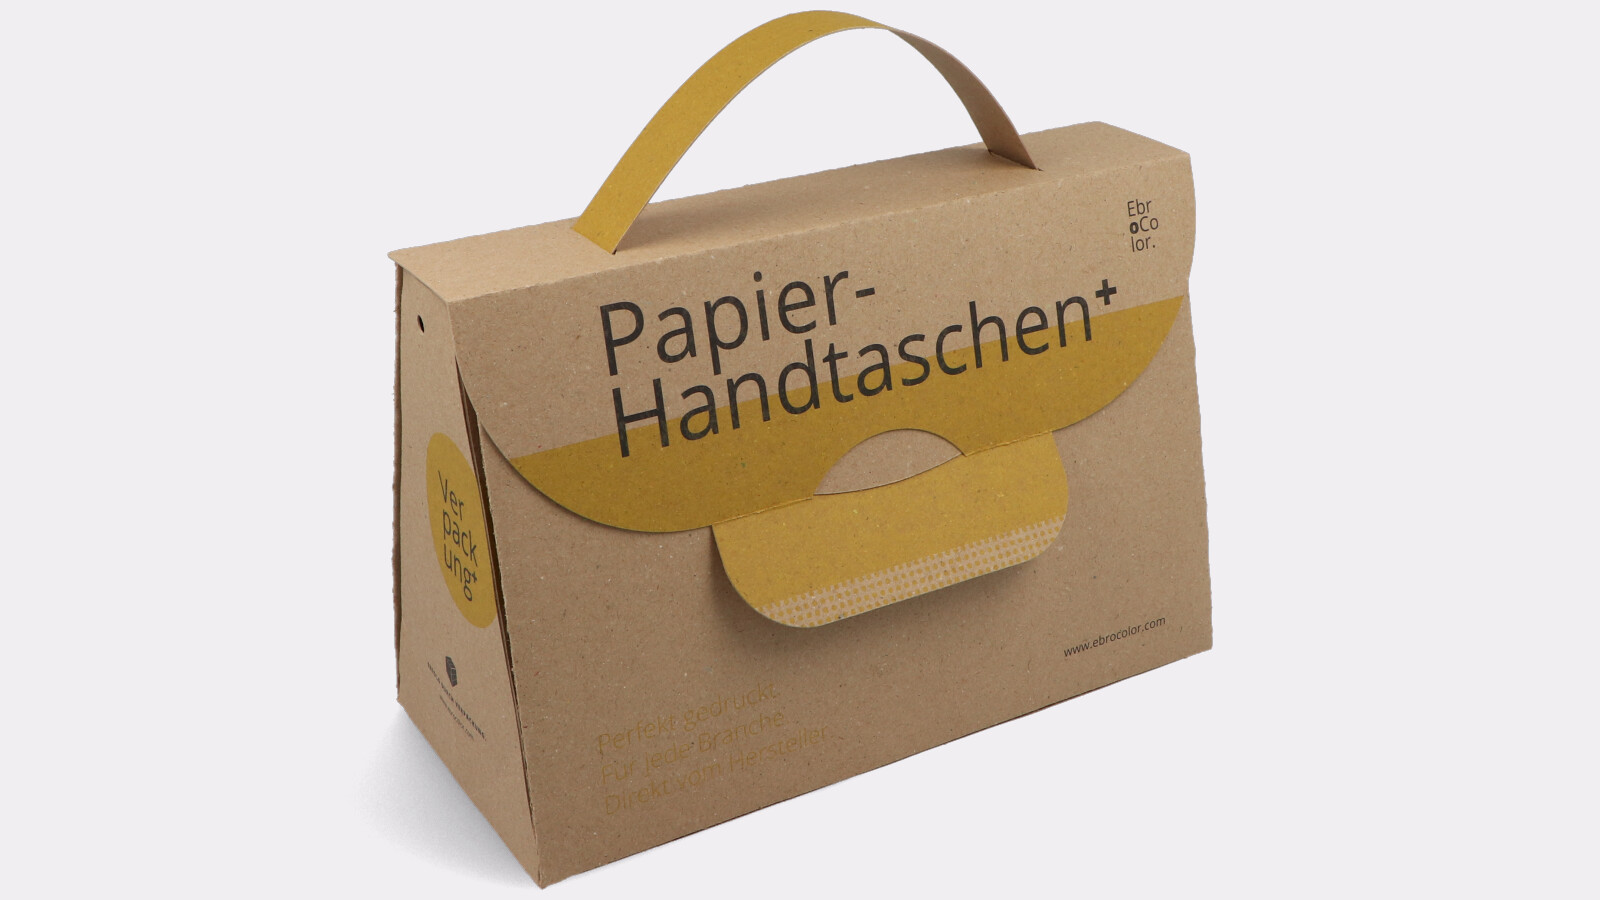 Papier-Handtasche aus Recyclingkarton braun